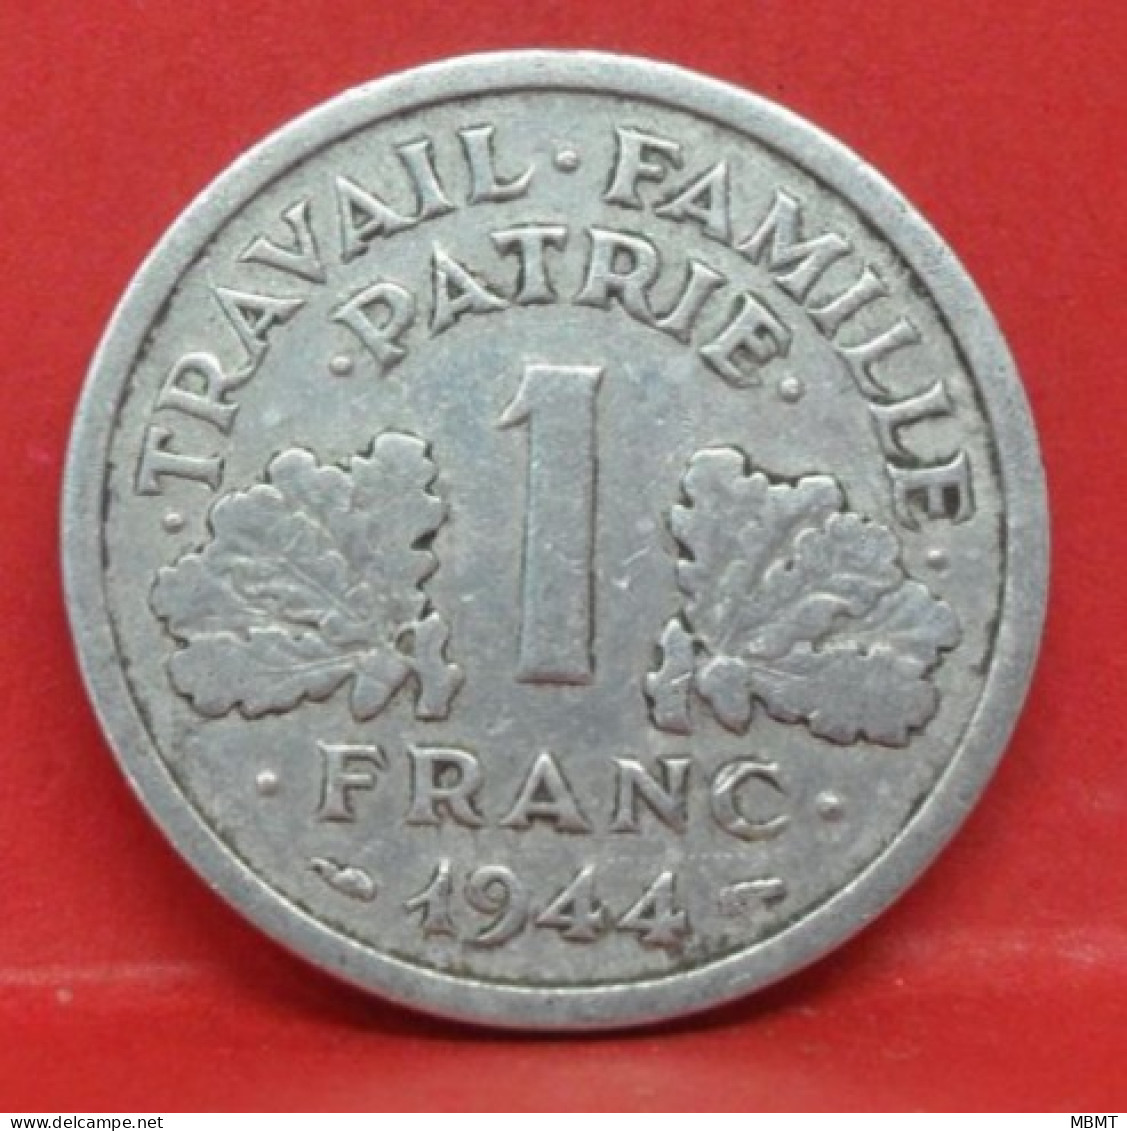 1 Franc état Français 1944 C - TB - Pièce Monnaie France - Article N°661 - 1 Franc